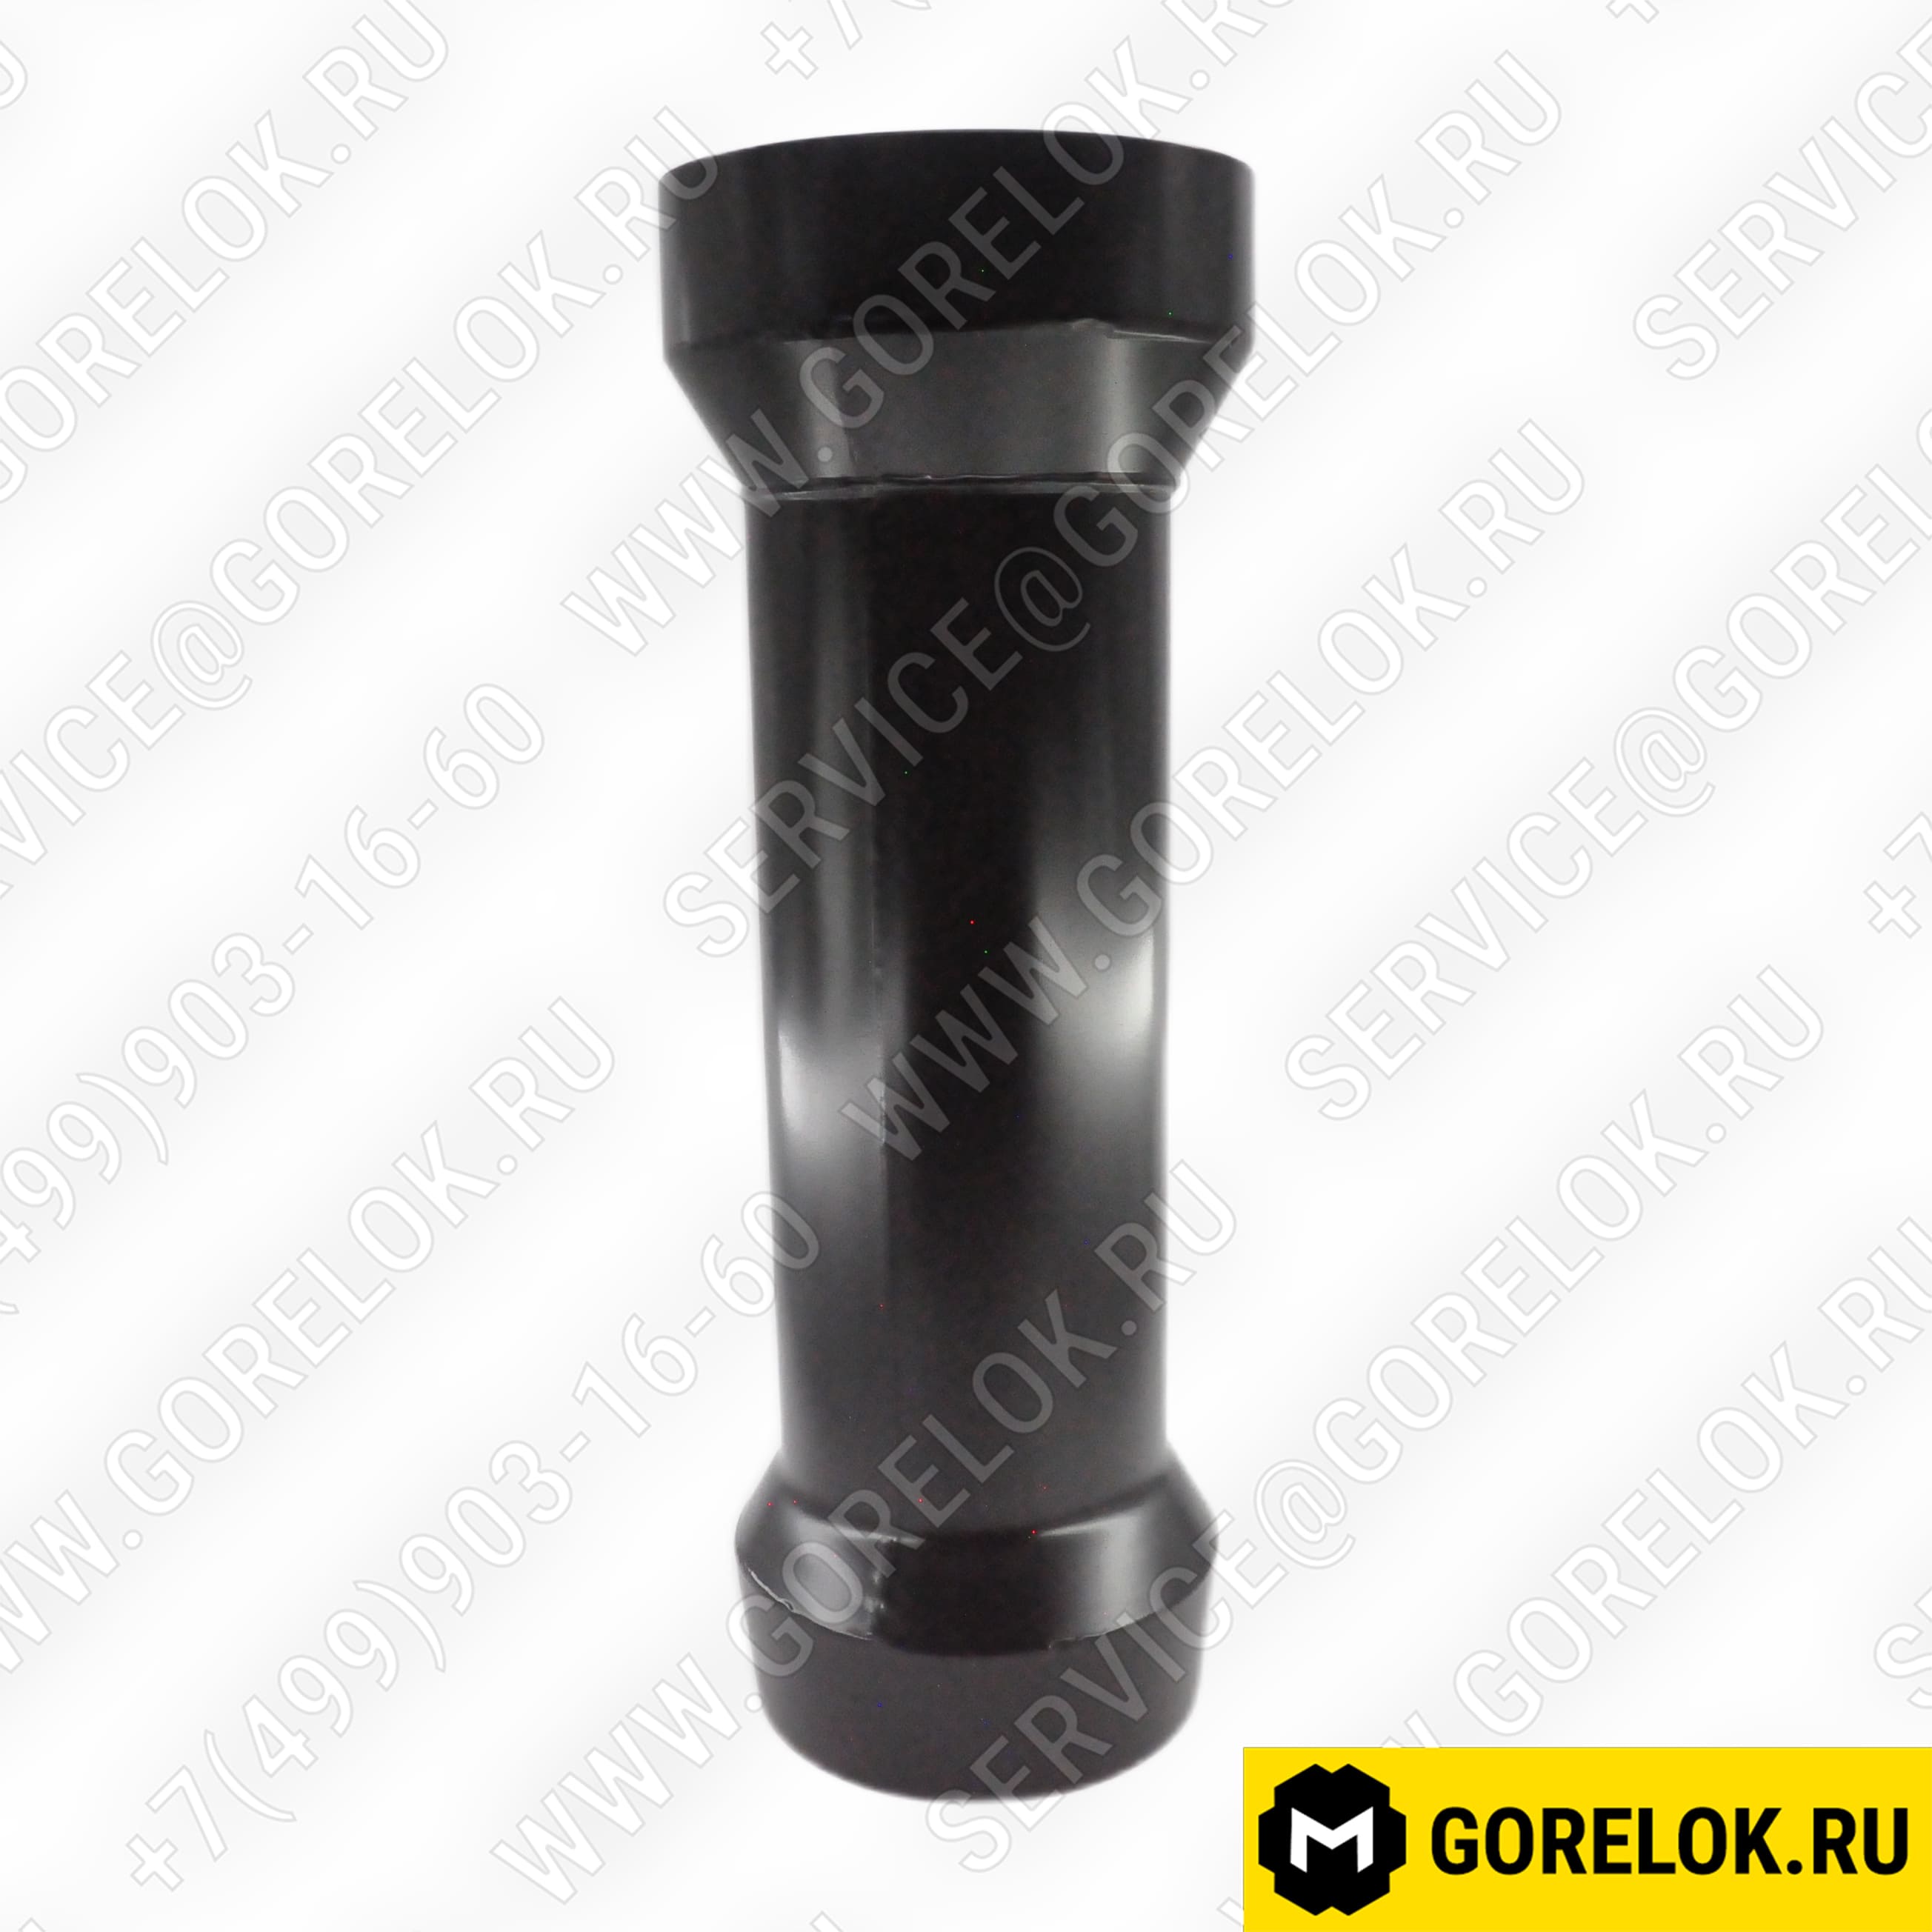 Жаровая труба для газовых горелок Ø160 X 600 мм : 65324609, BFB07055/017